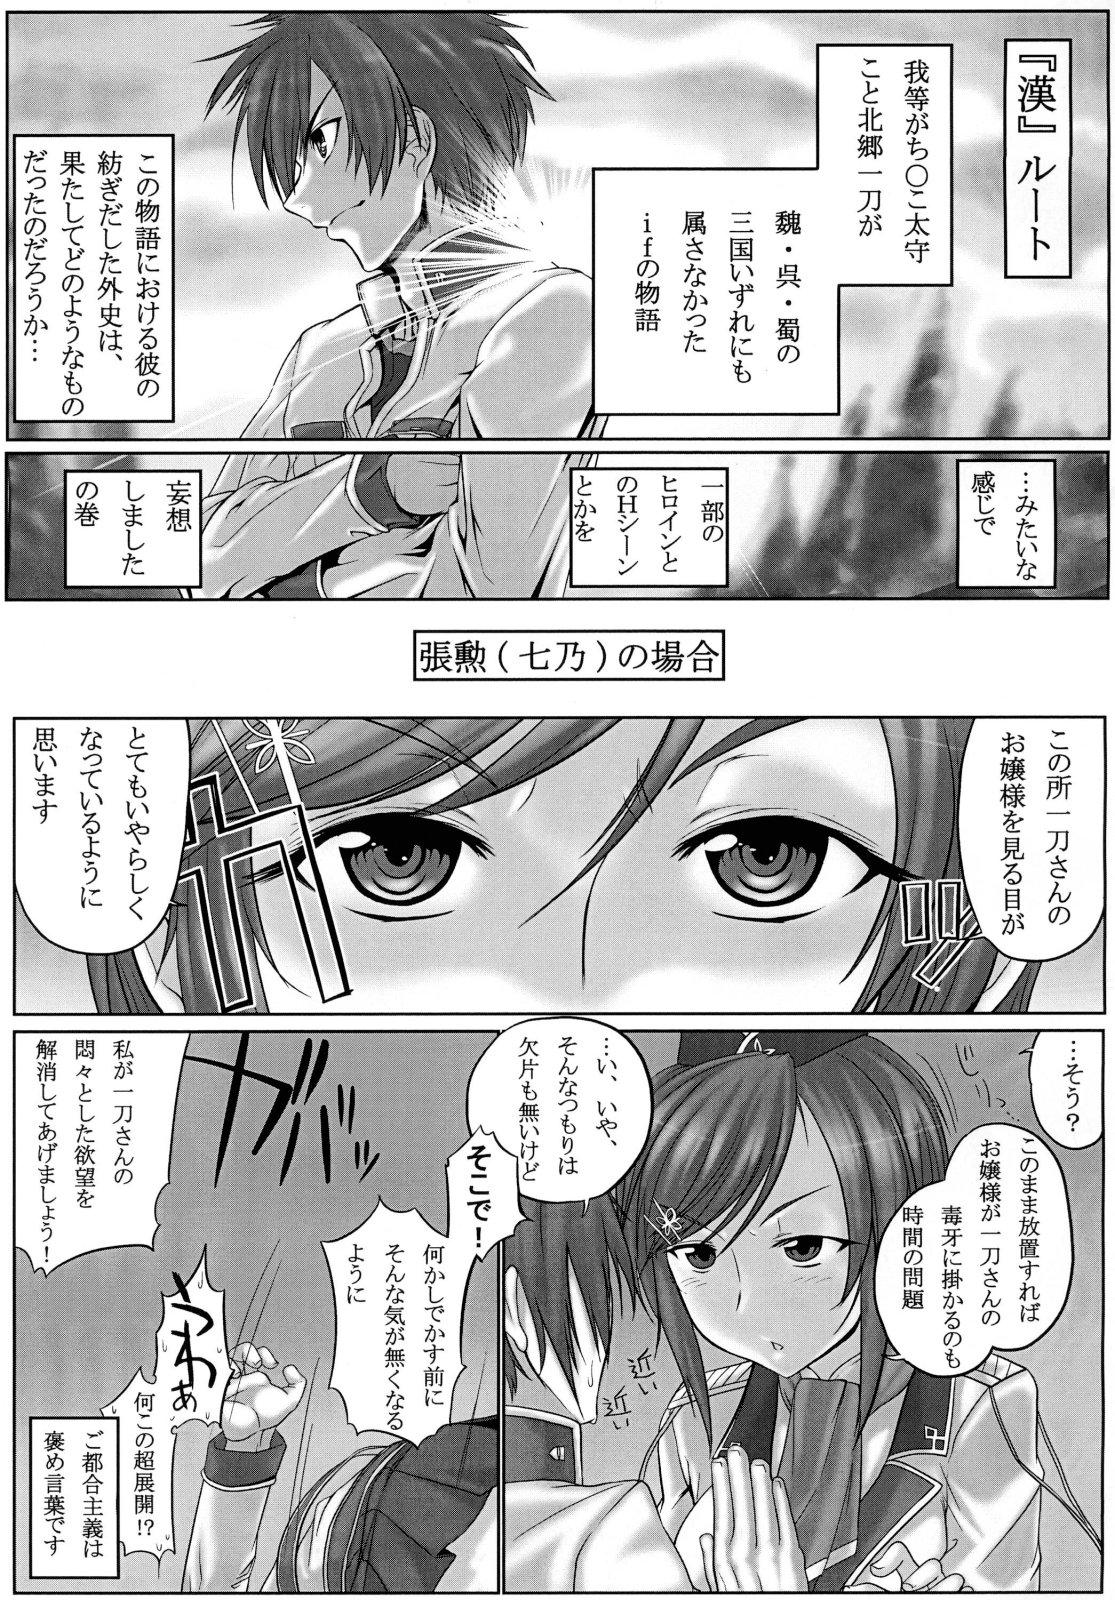 Peituda Shin Koihime † Masaka no Choice - Koihime musou Sexcam - Page 5